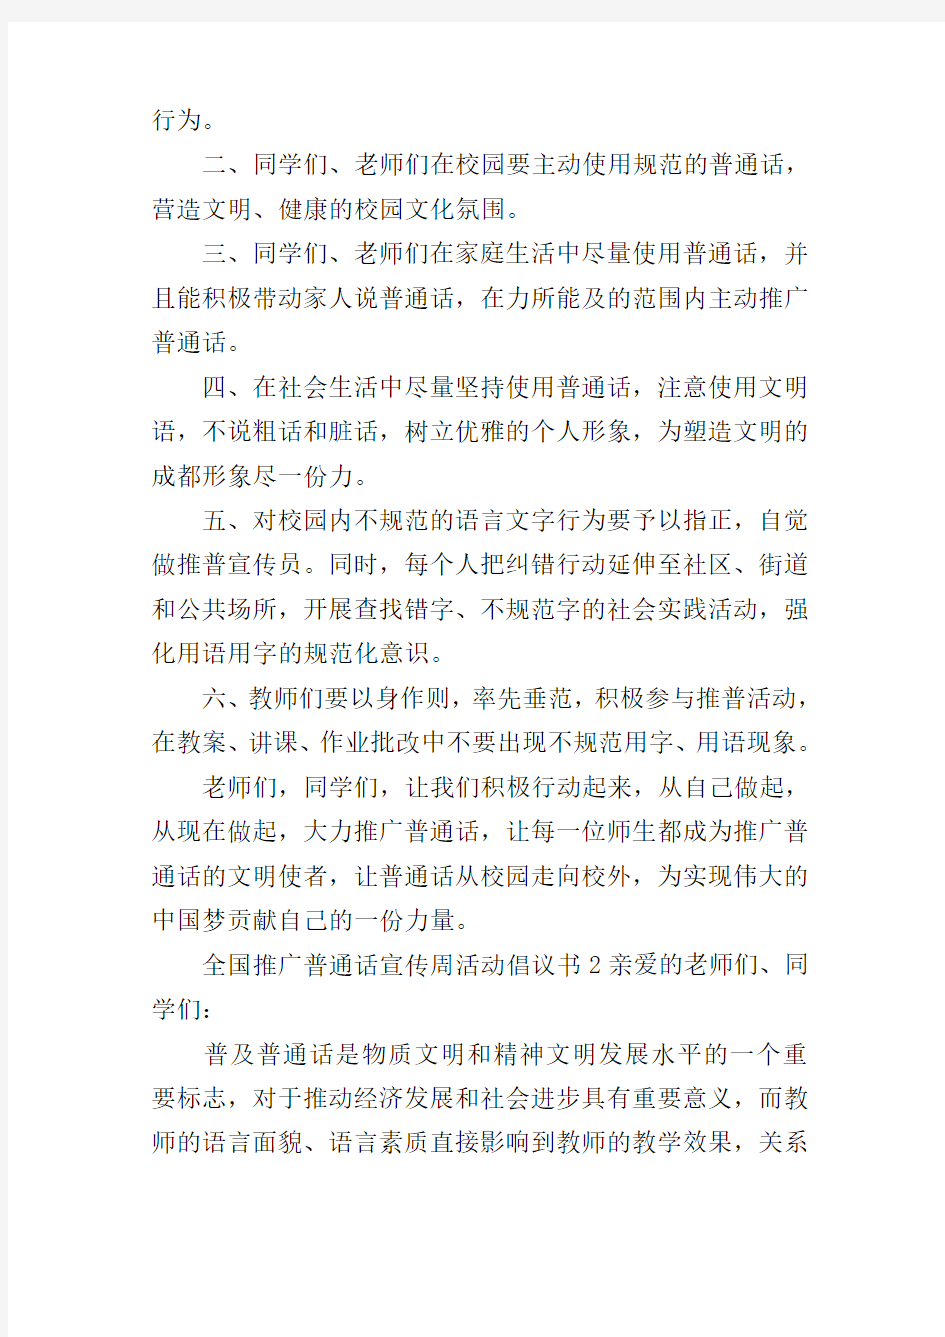 全国推广普通话宣传周活动倡议书(通用3篇)